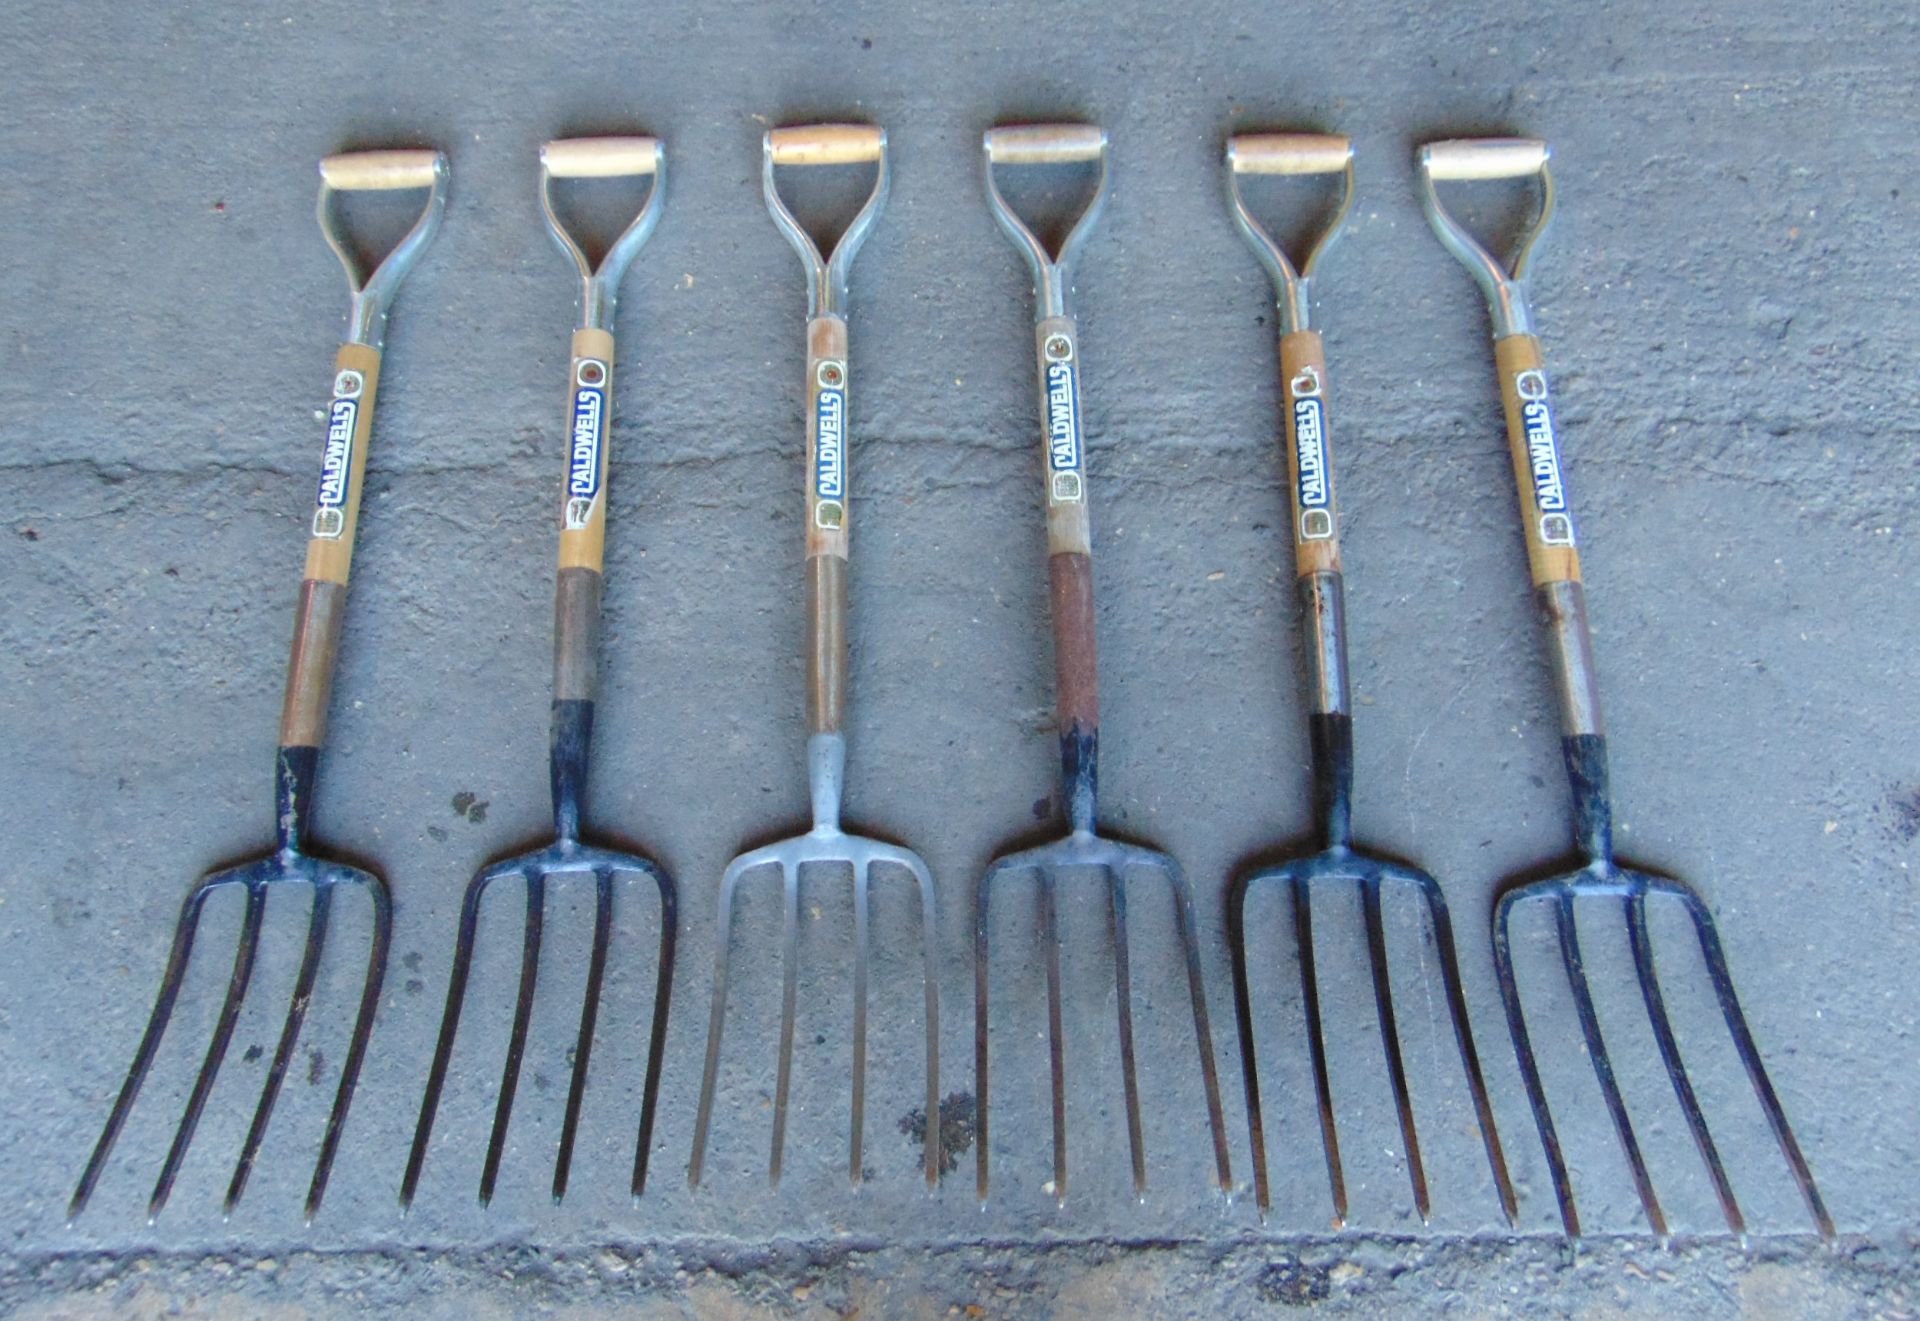 6 x Digging Forks